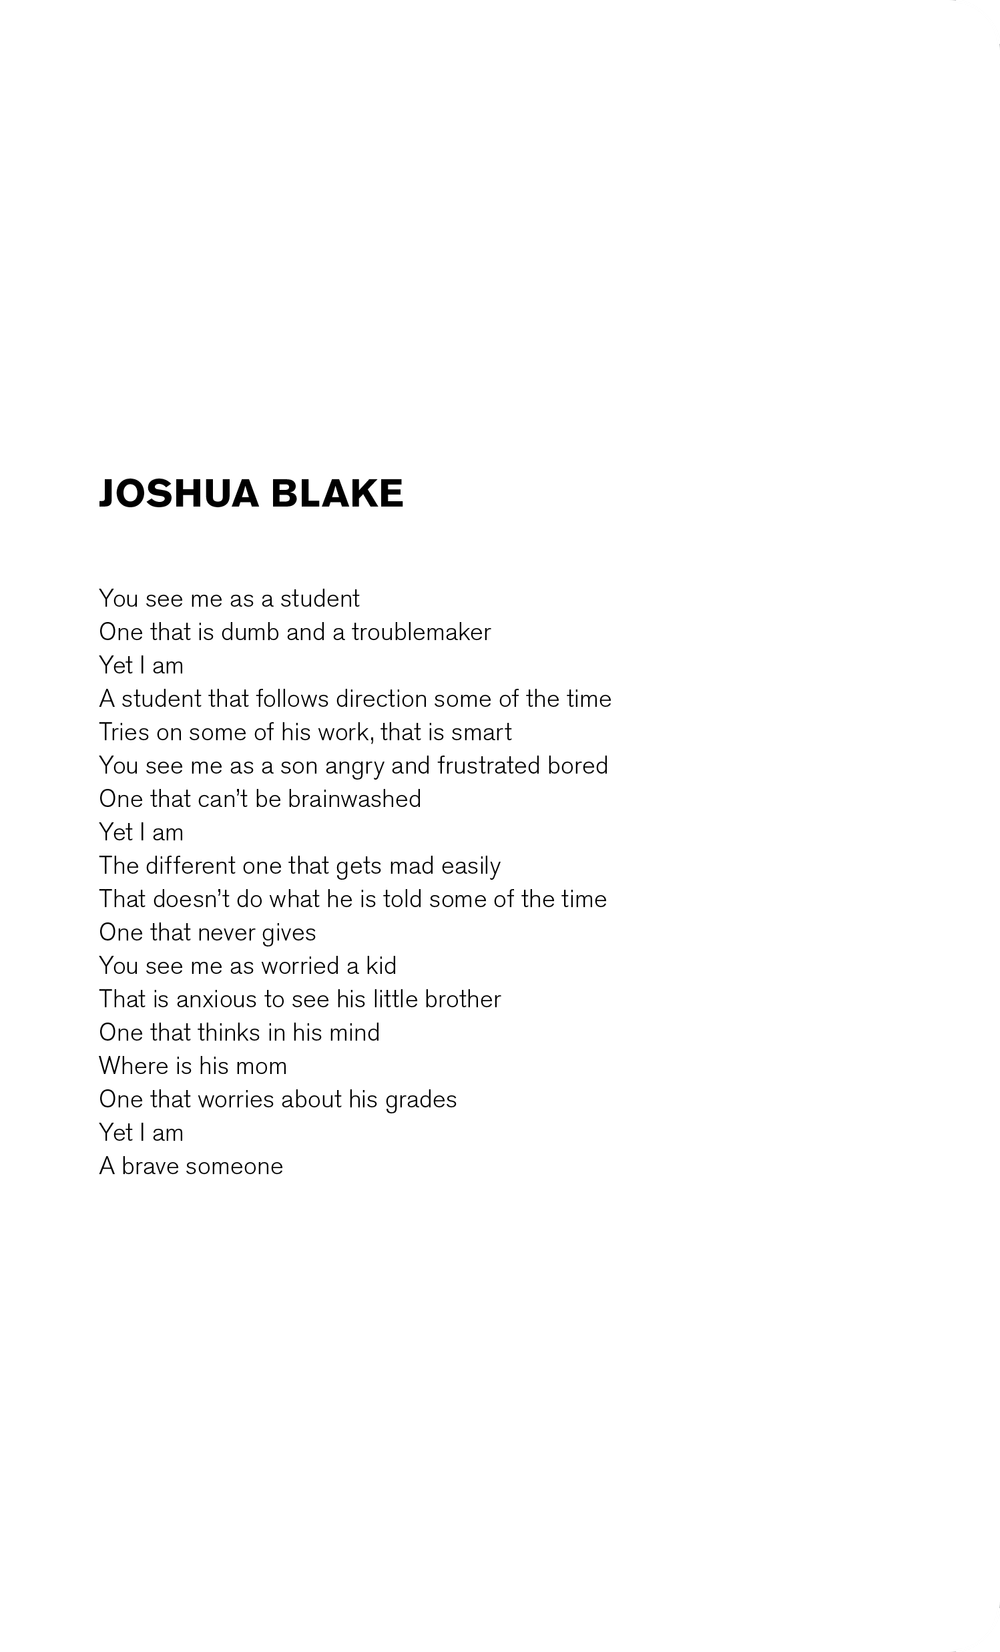 joshua-blake-poem.png